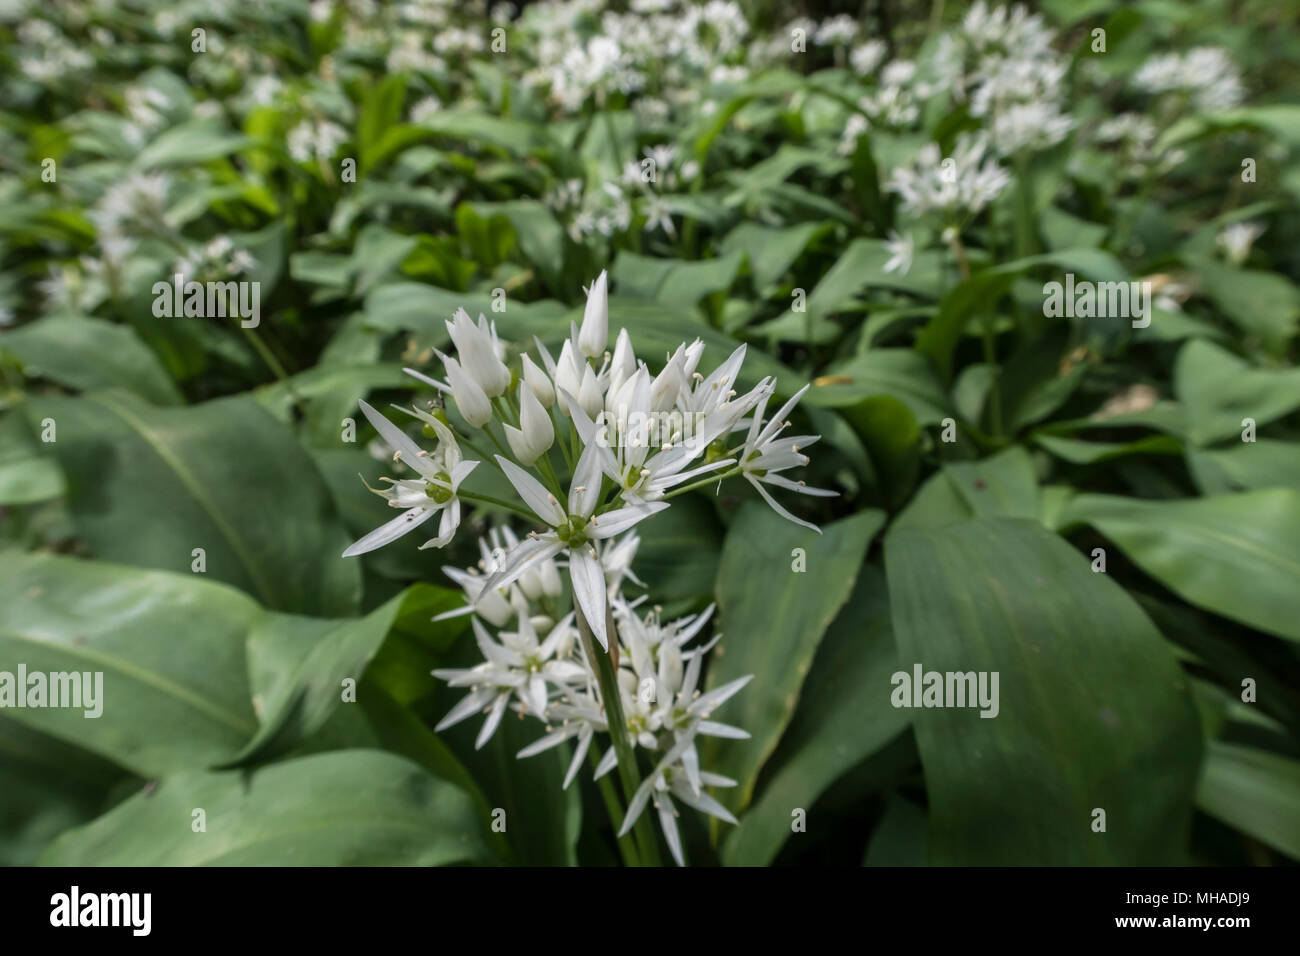 Bärlauch in der Blume in einem englischen Holz. Allium ursinum - Bärlauch, buckrams, Breitblättrigen Knoblauch, Bärlauch, Bärlauch, Porree, Stockfoto